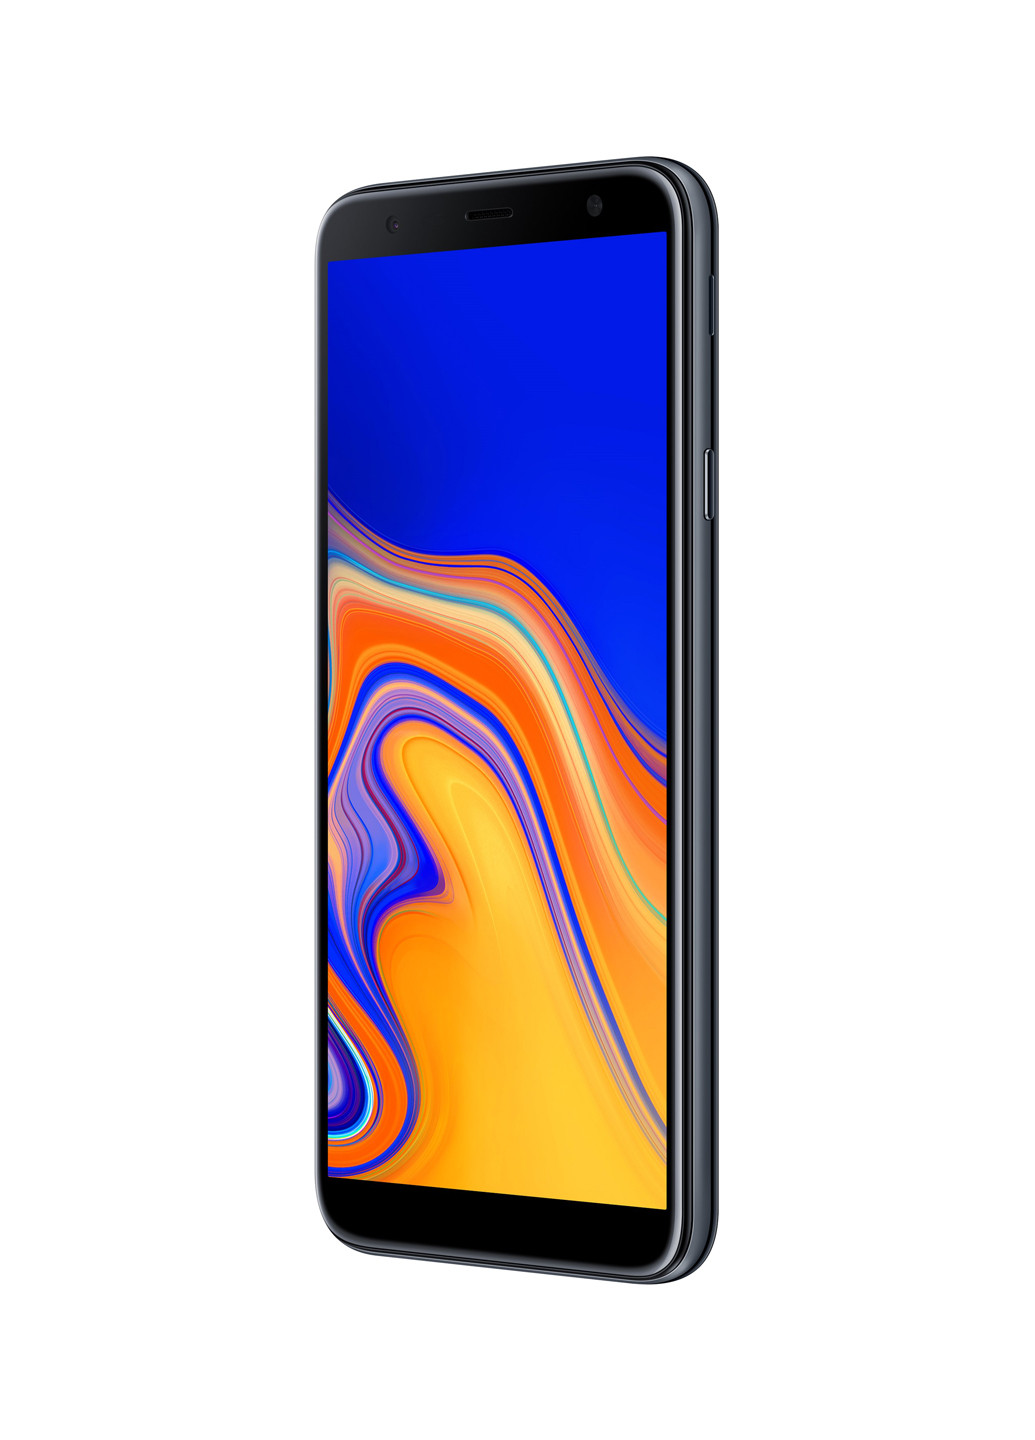 Смартфон Galaxy J4 + 2 / 16GB Black (SM-J415FZKNSEK) Samsung galaxy j4+ 2/16gb black (sm-j415fzknsek) (131063858)